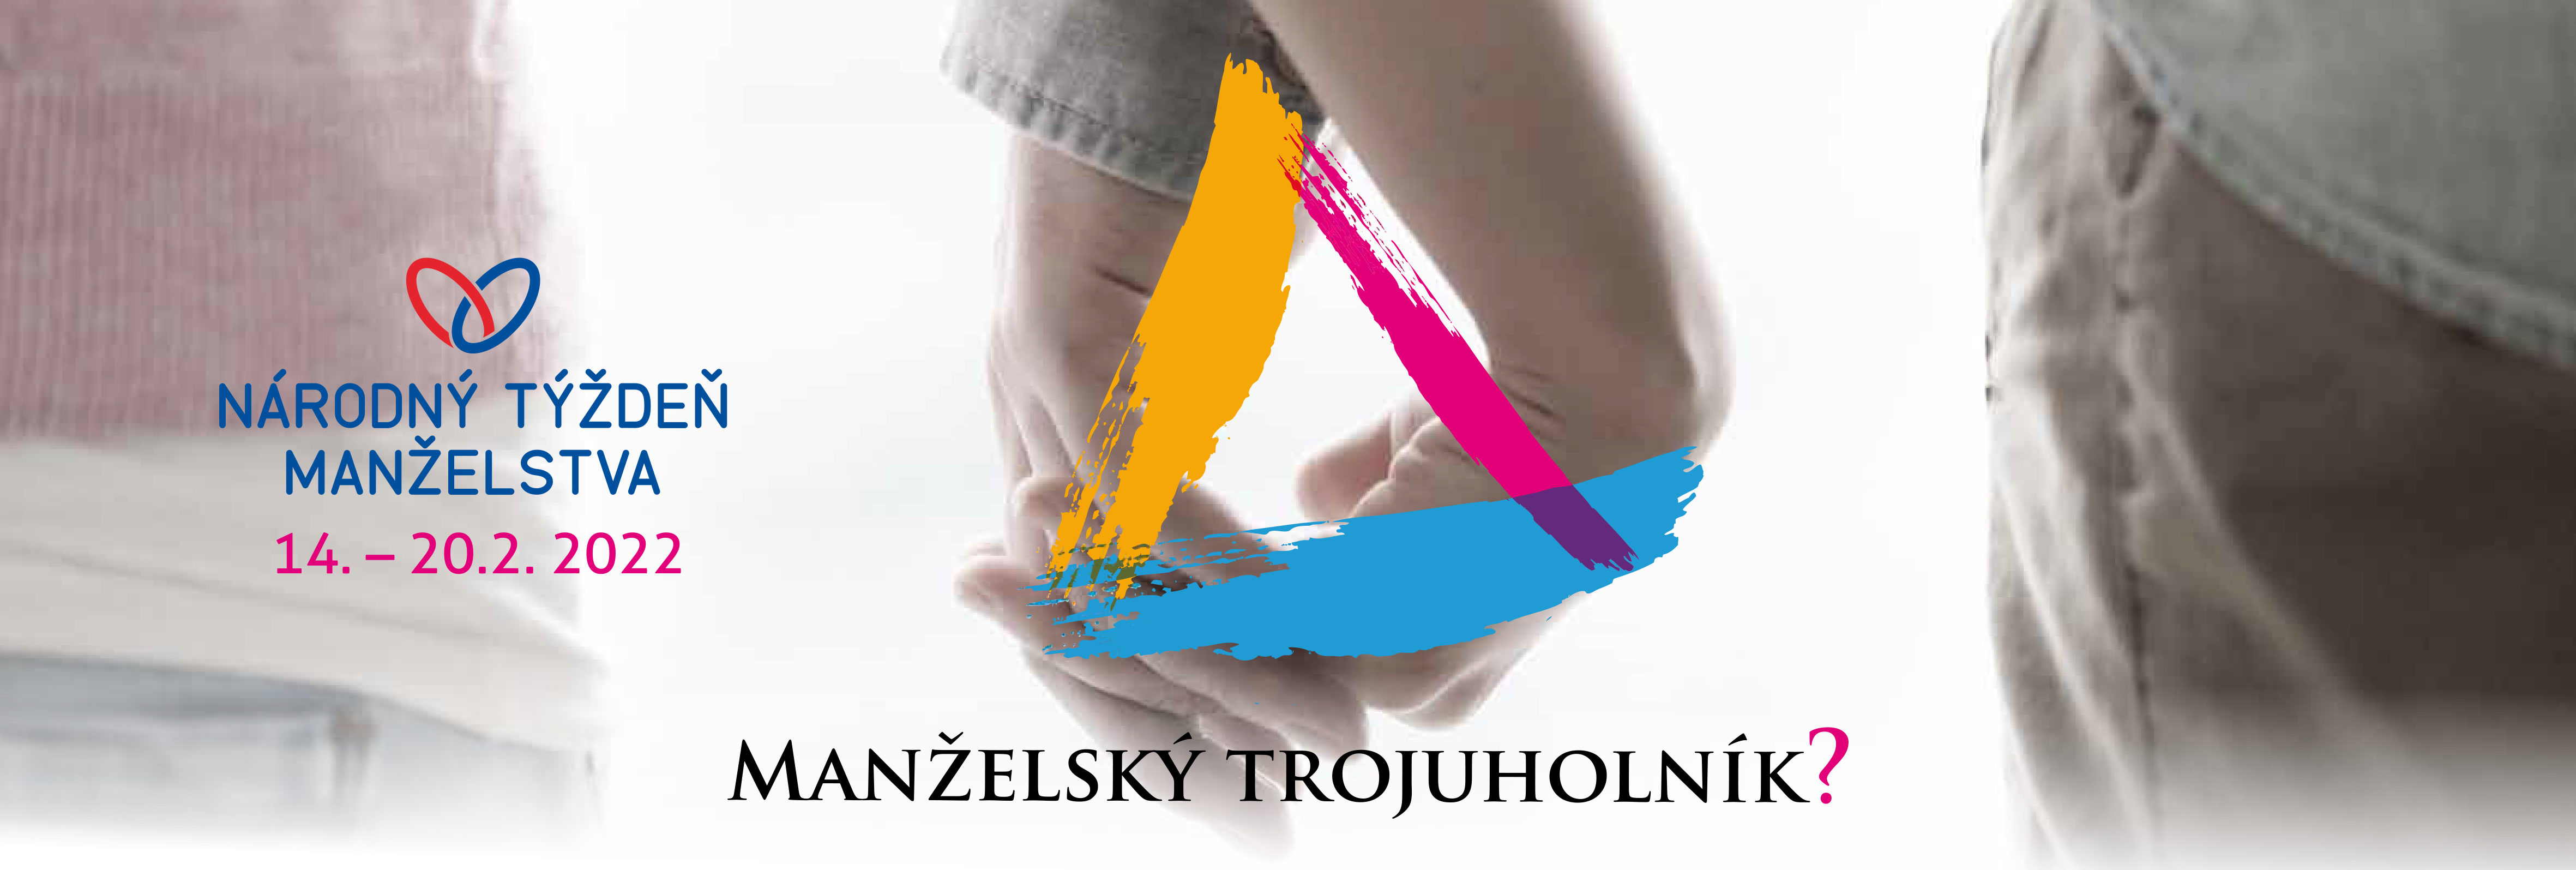 Národný týždeň manželstva roku 2022 tému: Manželský trojuholník? - Salezianky.sk